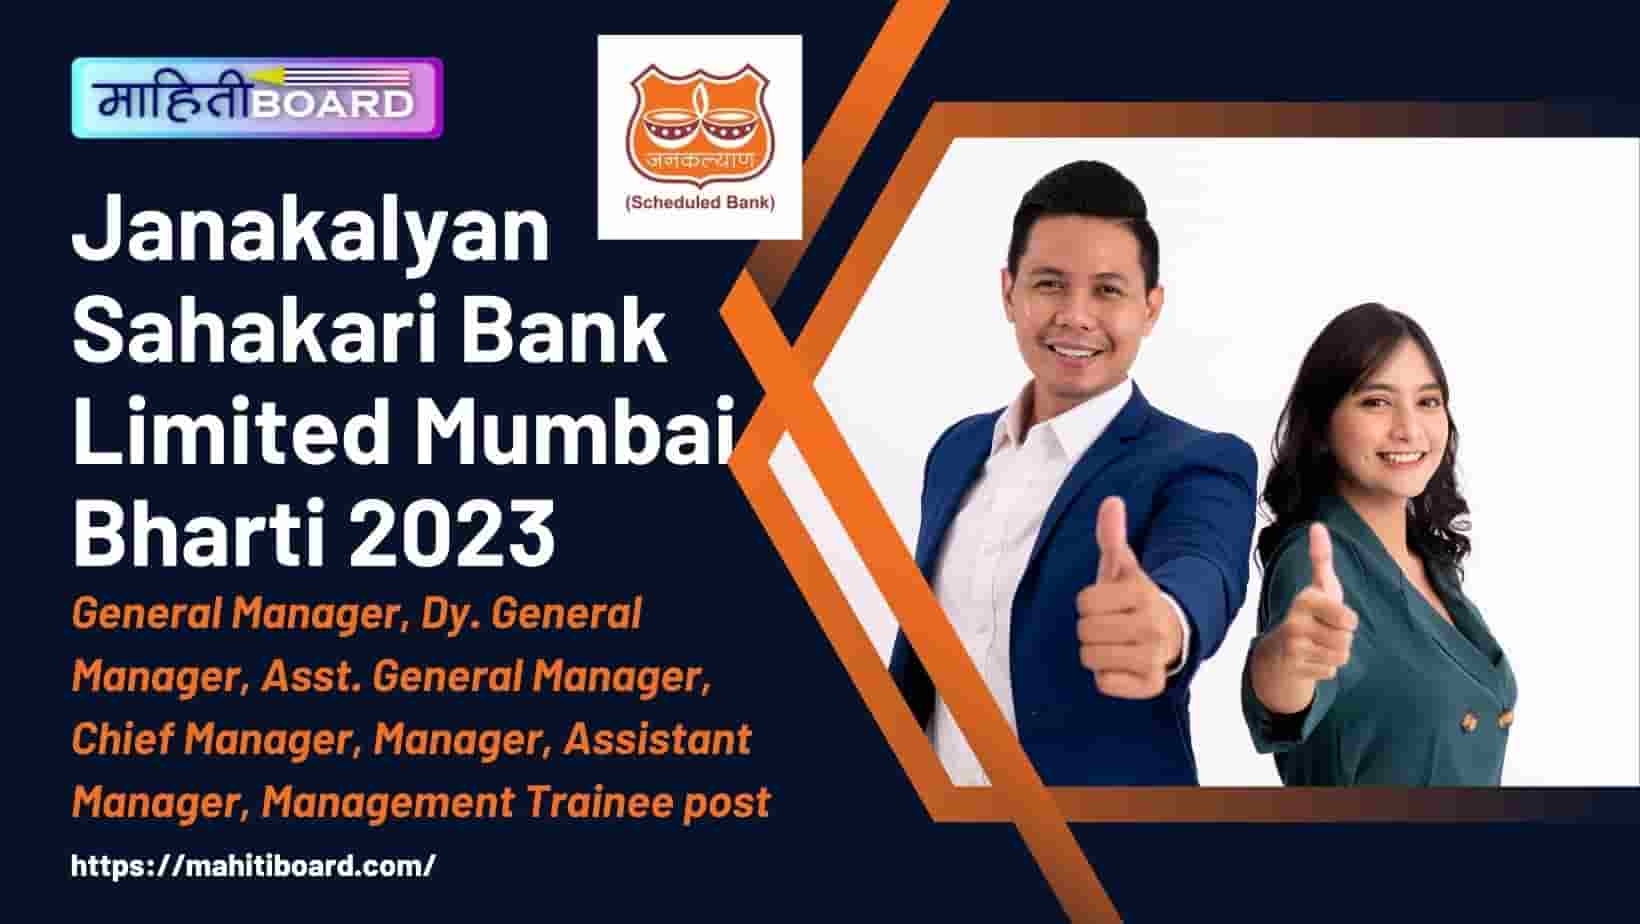 Janakalyan Sahakari Bank Limited Mumbai Bharti 2023